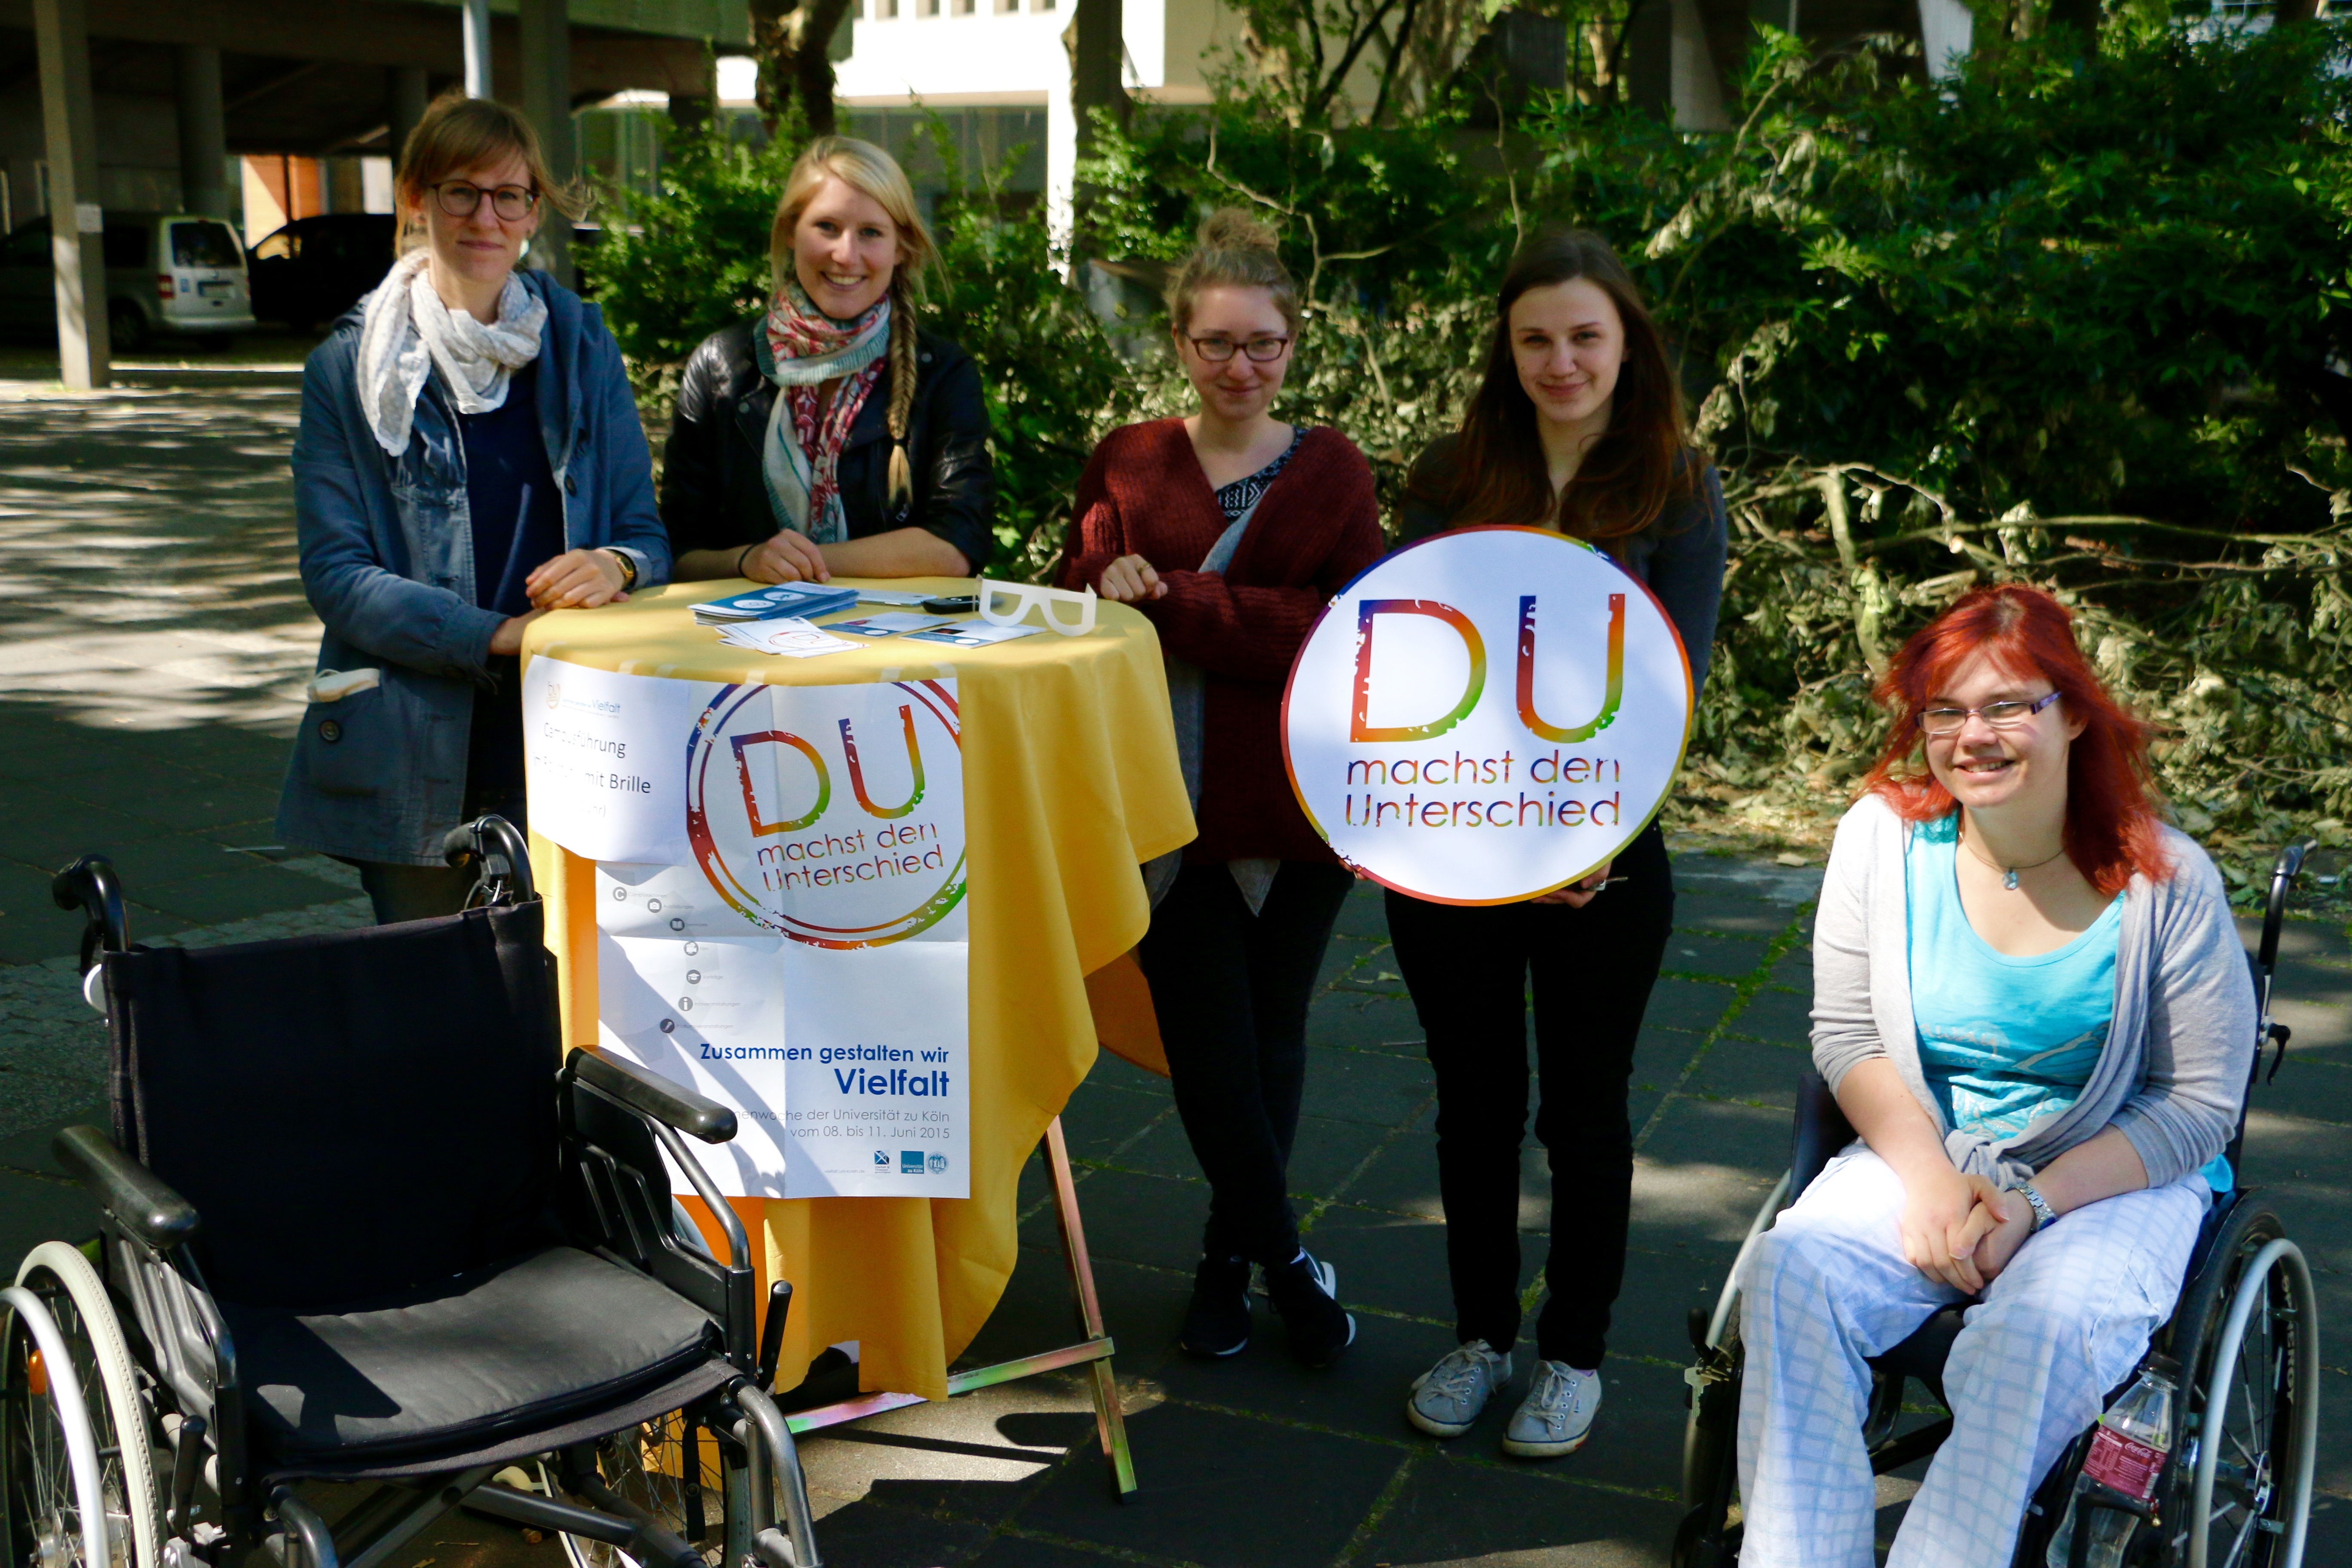 Das Team des Servicezentrum Behinderung und Studium auf dem Albertus Magnus Platz zusammen mit dem Logo der Themenwoche "Du machst den Unterschied" in den Händen